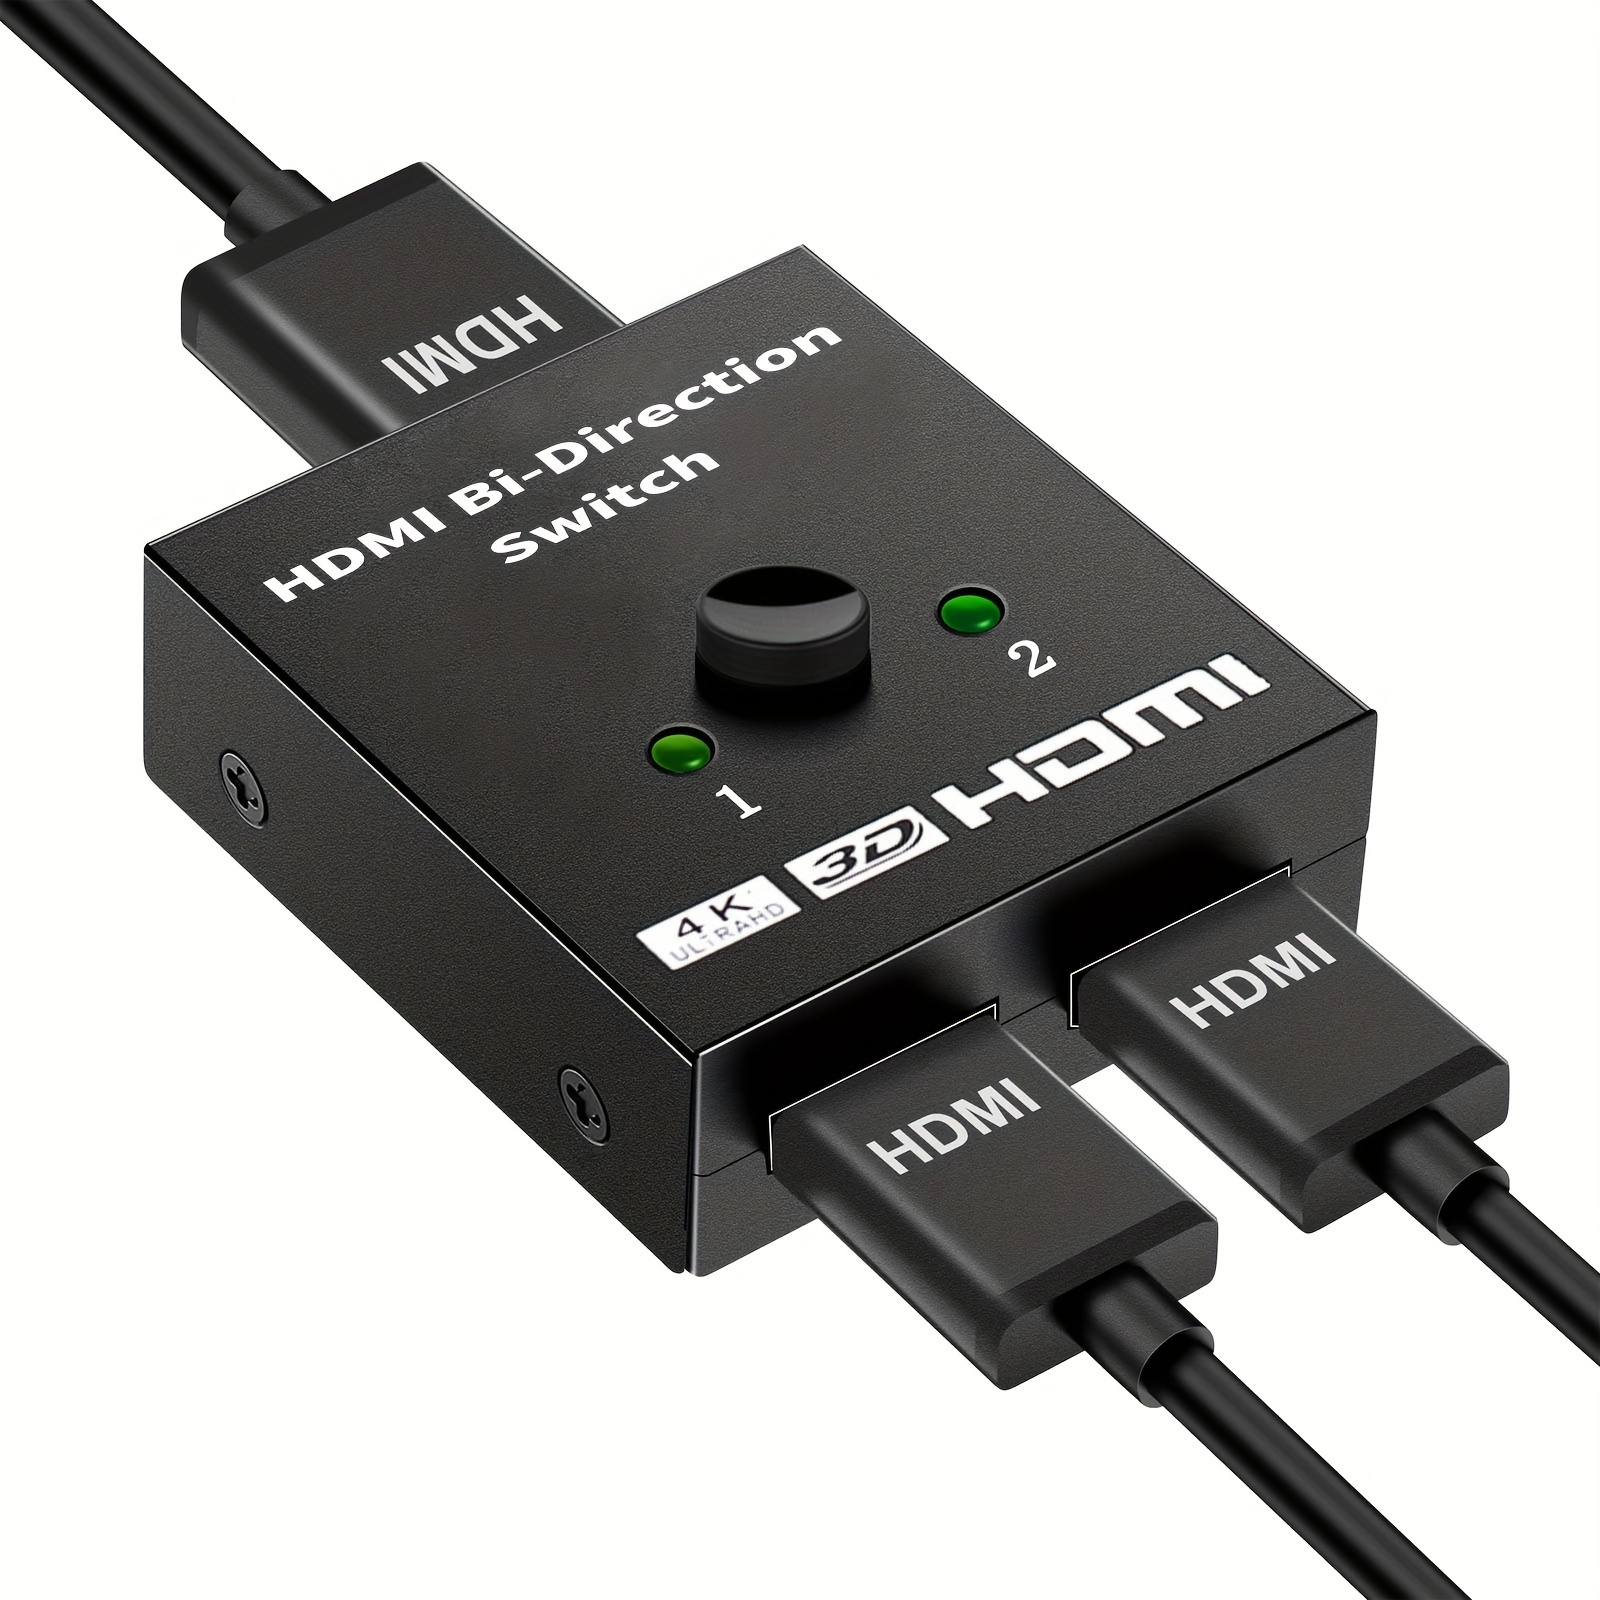 Cable adaptador divisor HDMI – Divisor HDMI 1 en 2 salidas HDMI macho a  HDMI hembra dual de 1 a 2 vías para HDMI HD, LED, LCD, TV, compatible con  dos